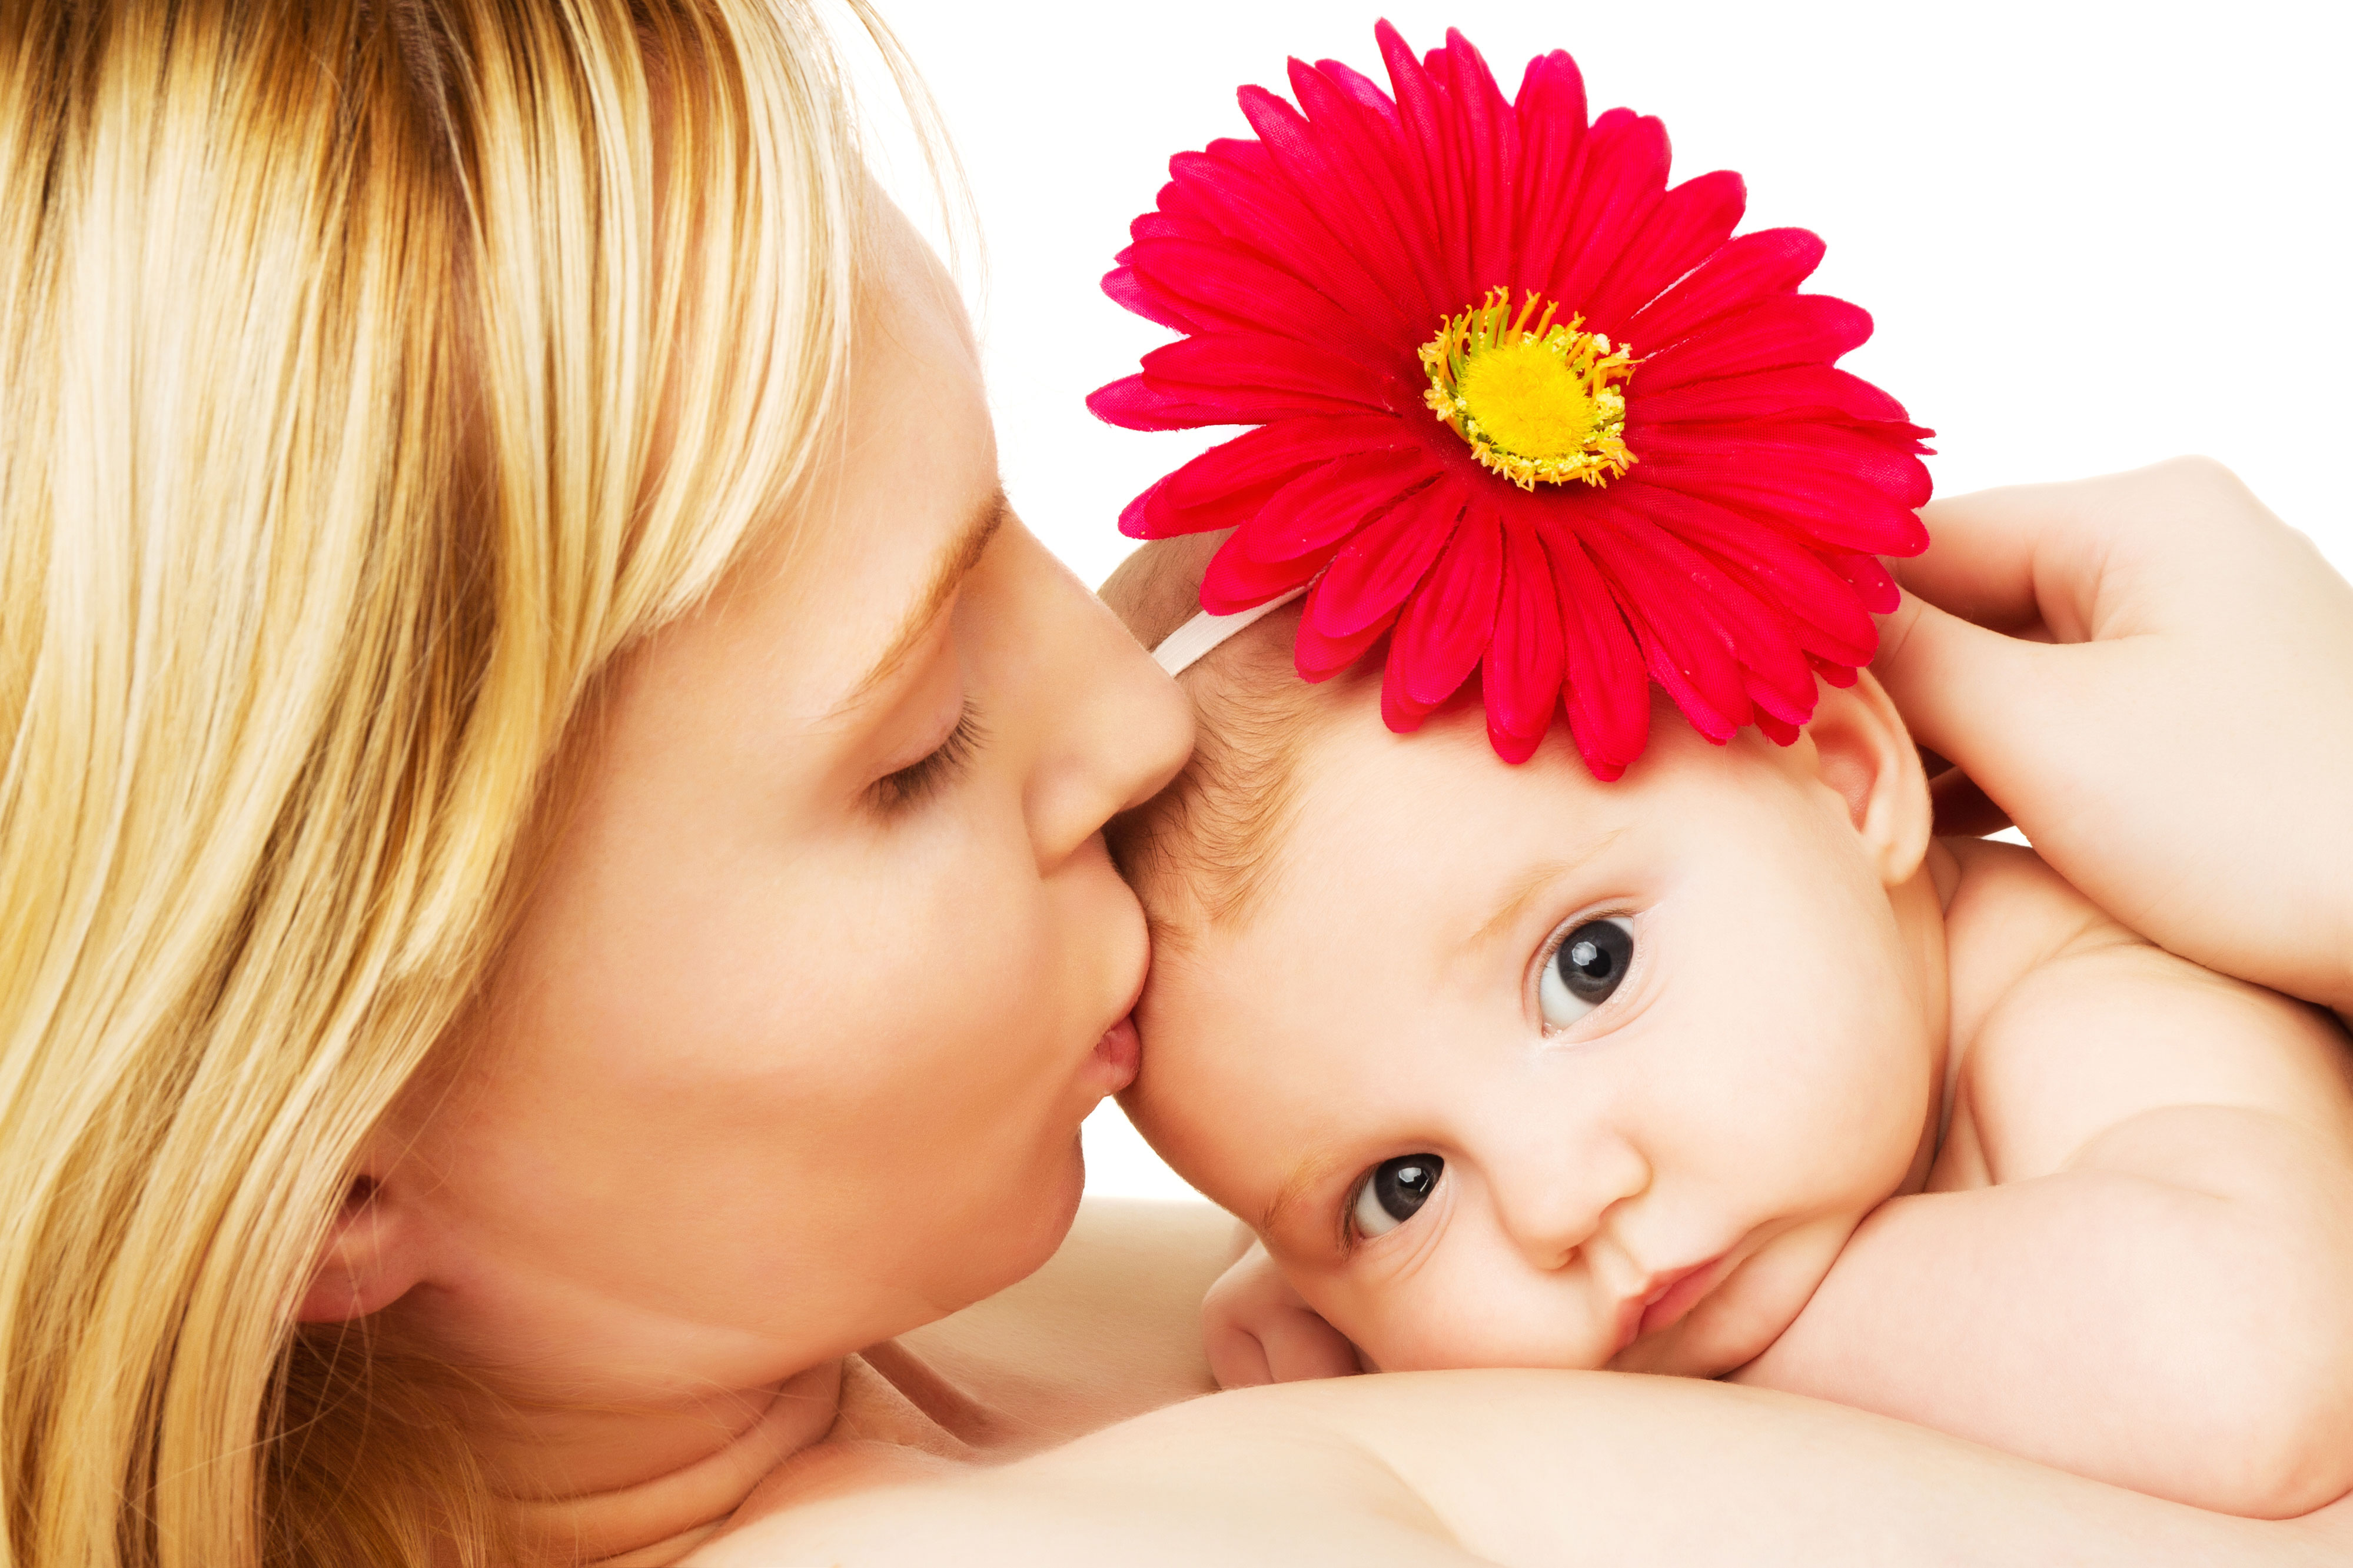 anneler günü ne zaman 2014, anneler günü internethaber, anneler günü mesajları anlamlı, anneler günü hediyeleri